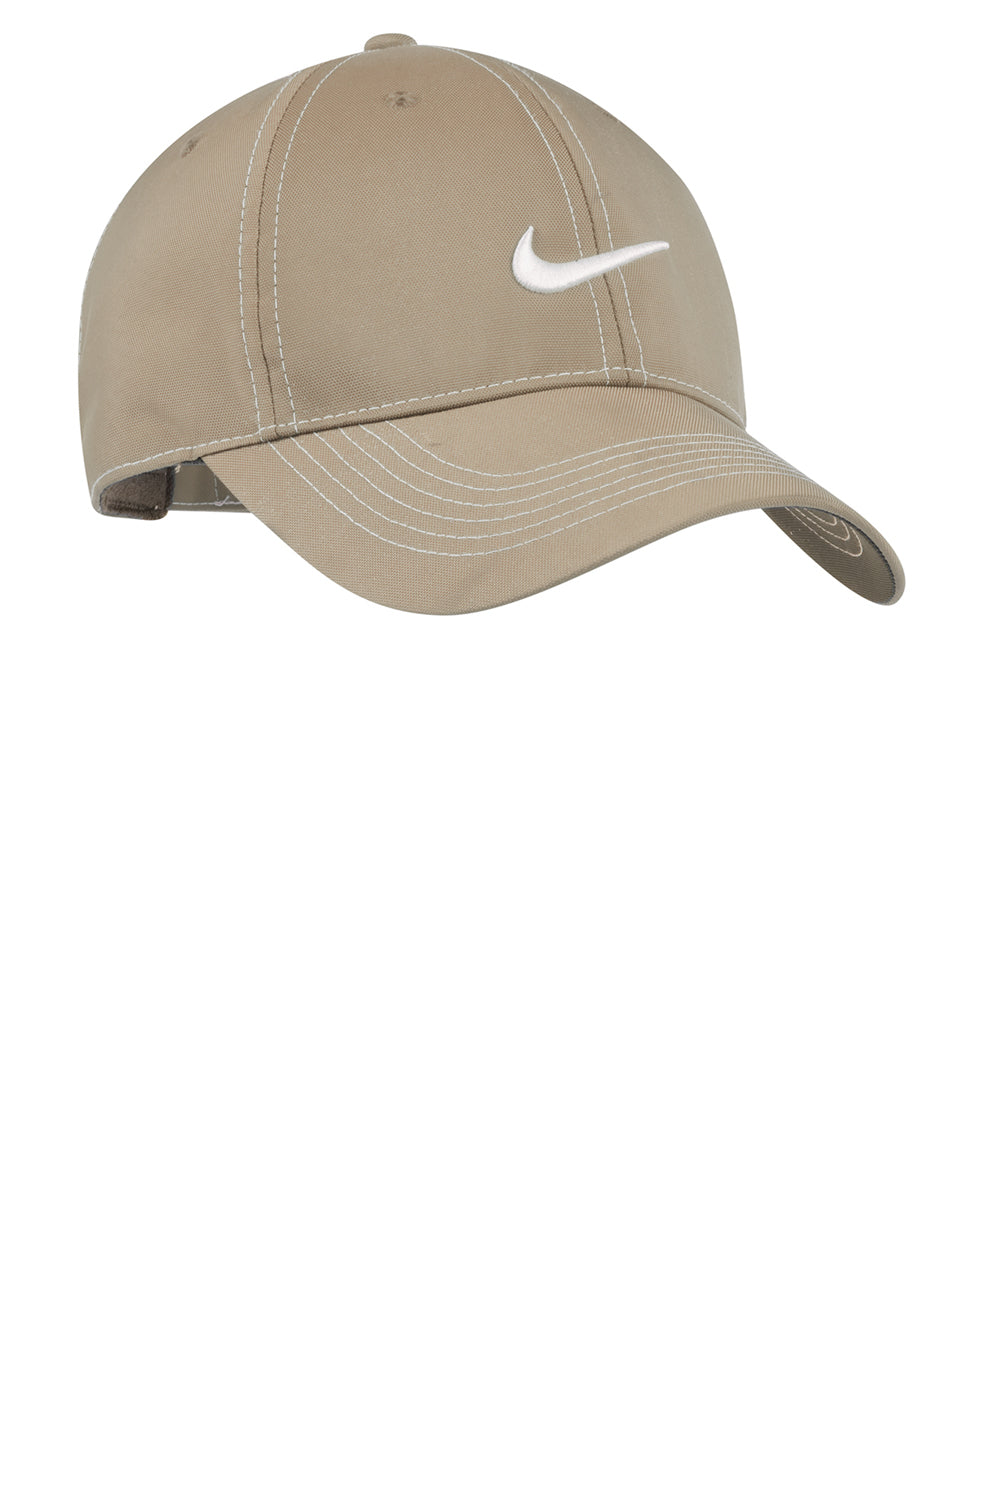 Nike 333114 Mens Adjustable Hat Pinenut Brown Front